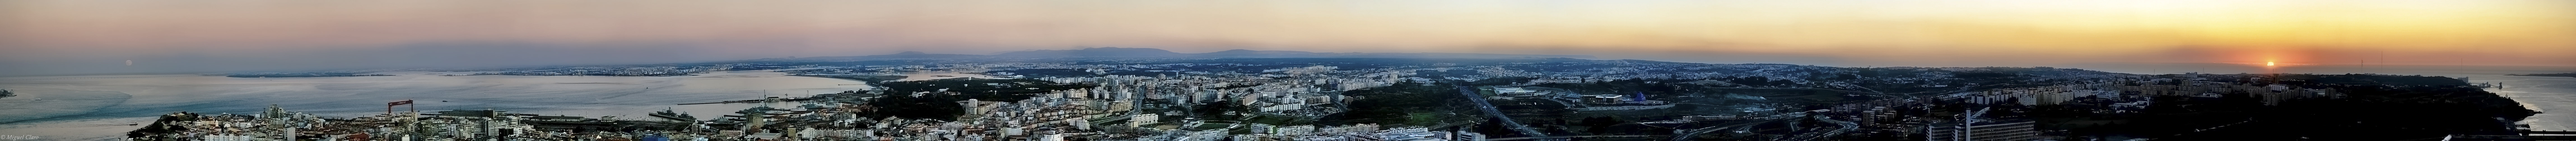 Das Bild ist ein sehr breites Panorama mit Blick über Lissabon, rechts geht die Sonne unter, links geht der Mond auf.